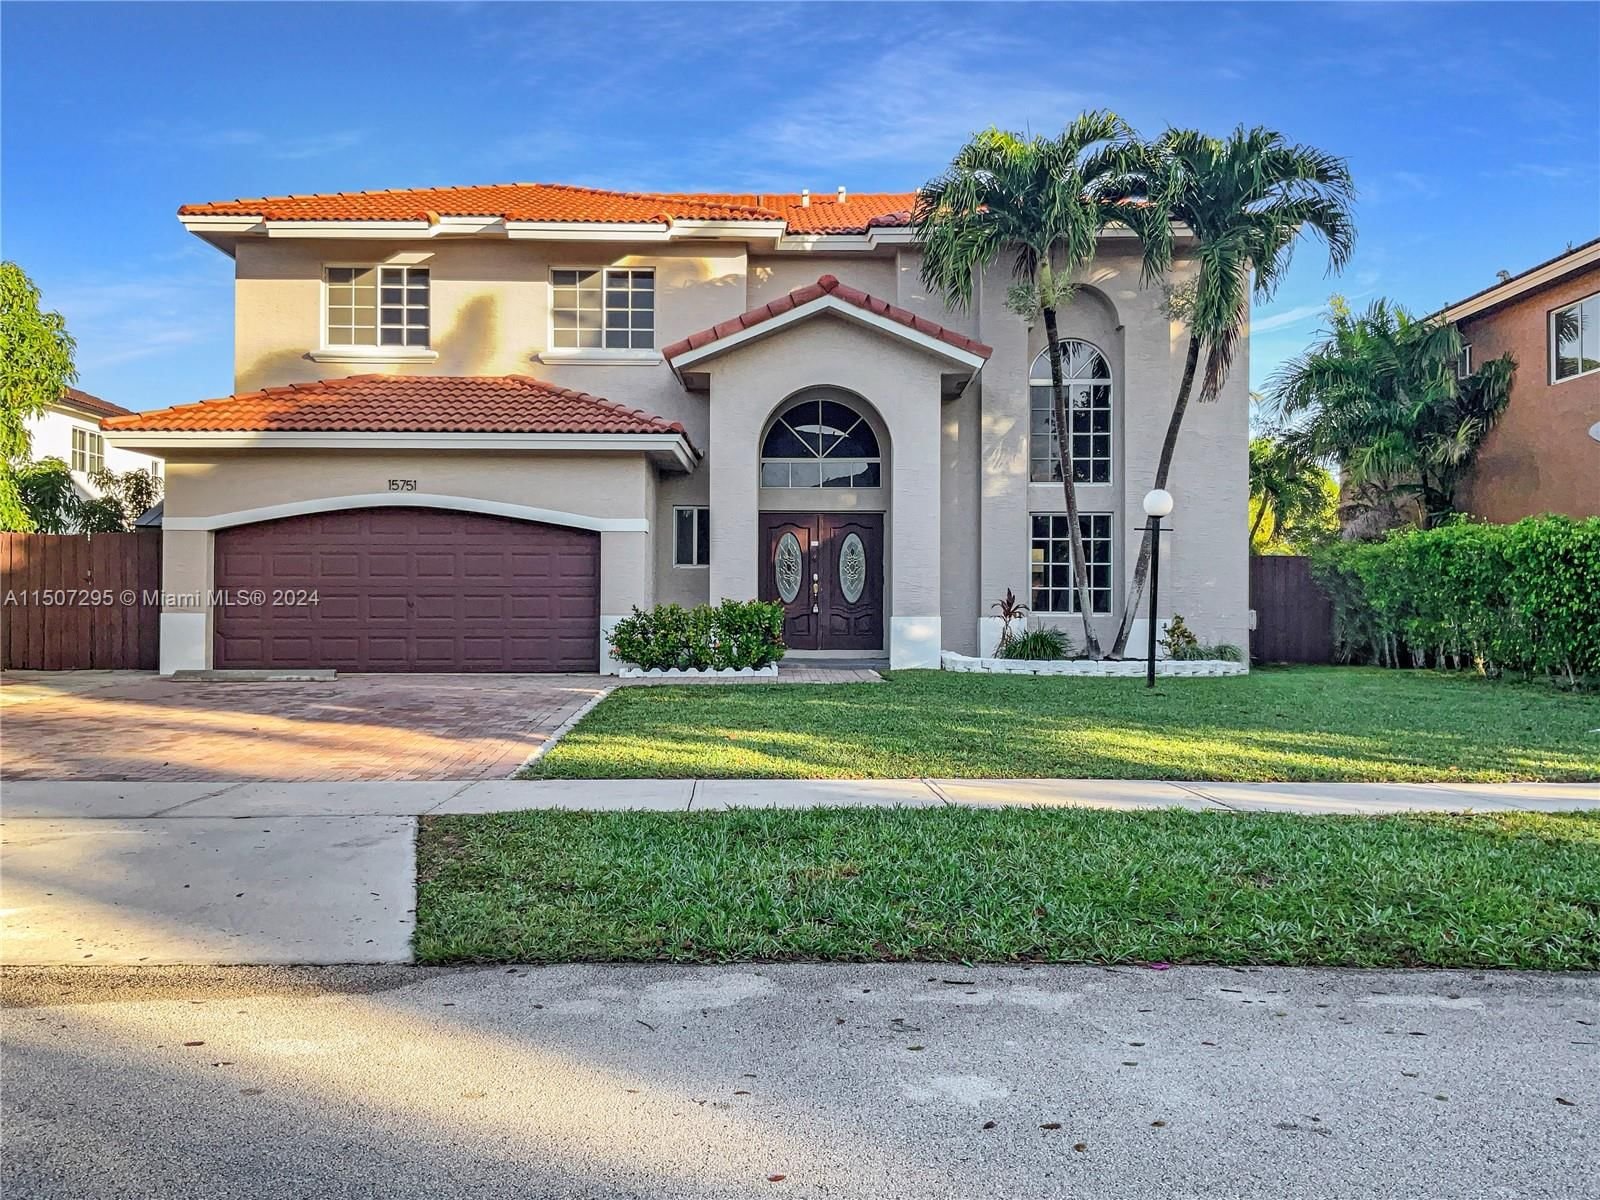 Real estate property located at 15751 145th Ter, Miami-Dade County, MILON VENTURE, Miami, FL